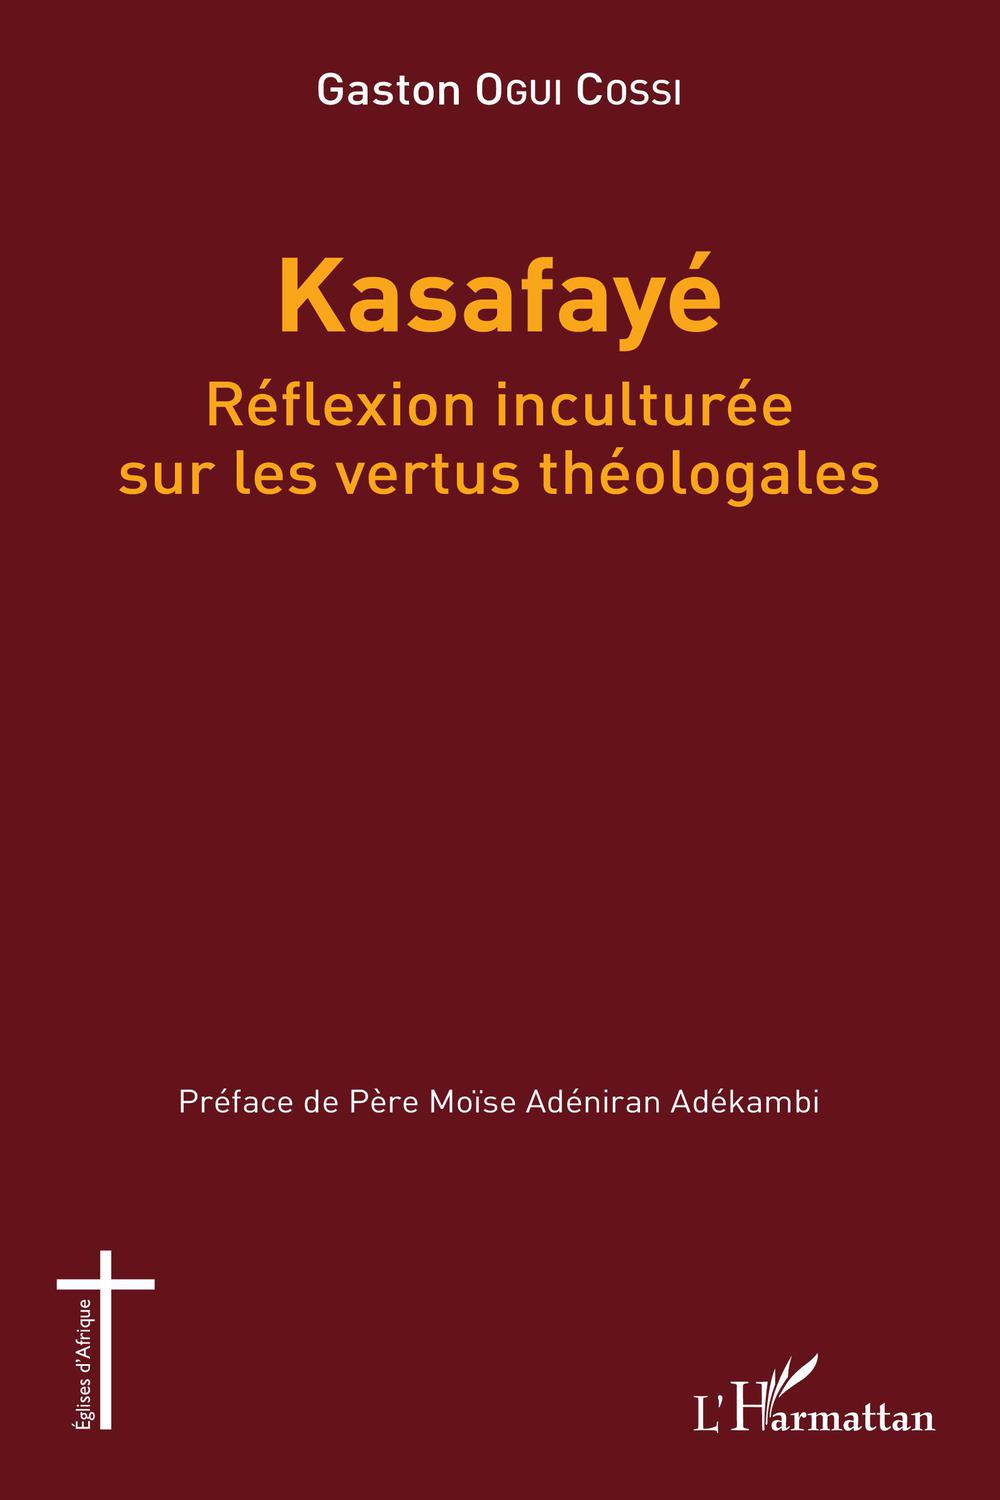 Kasafayé. Réflexion inculturée sur les vertus théologales - Gaston Ogui Cossi